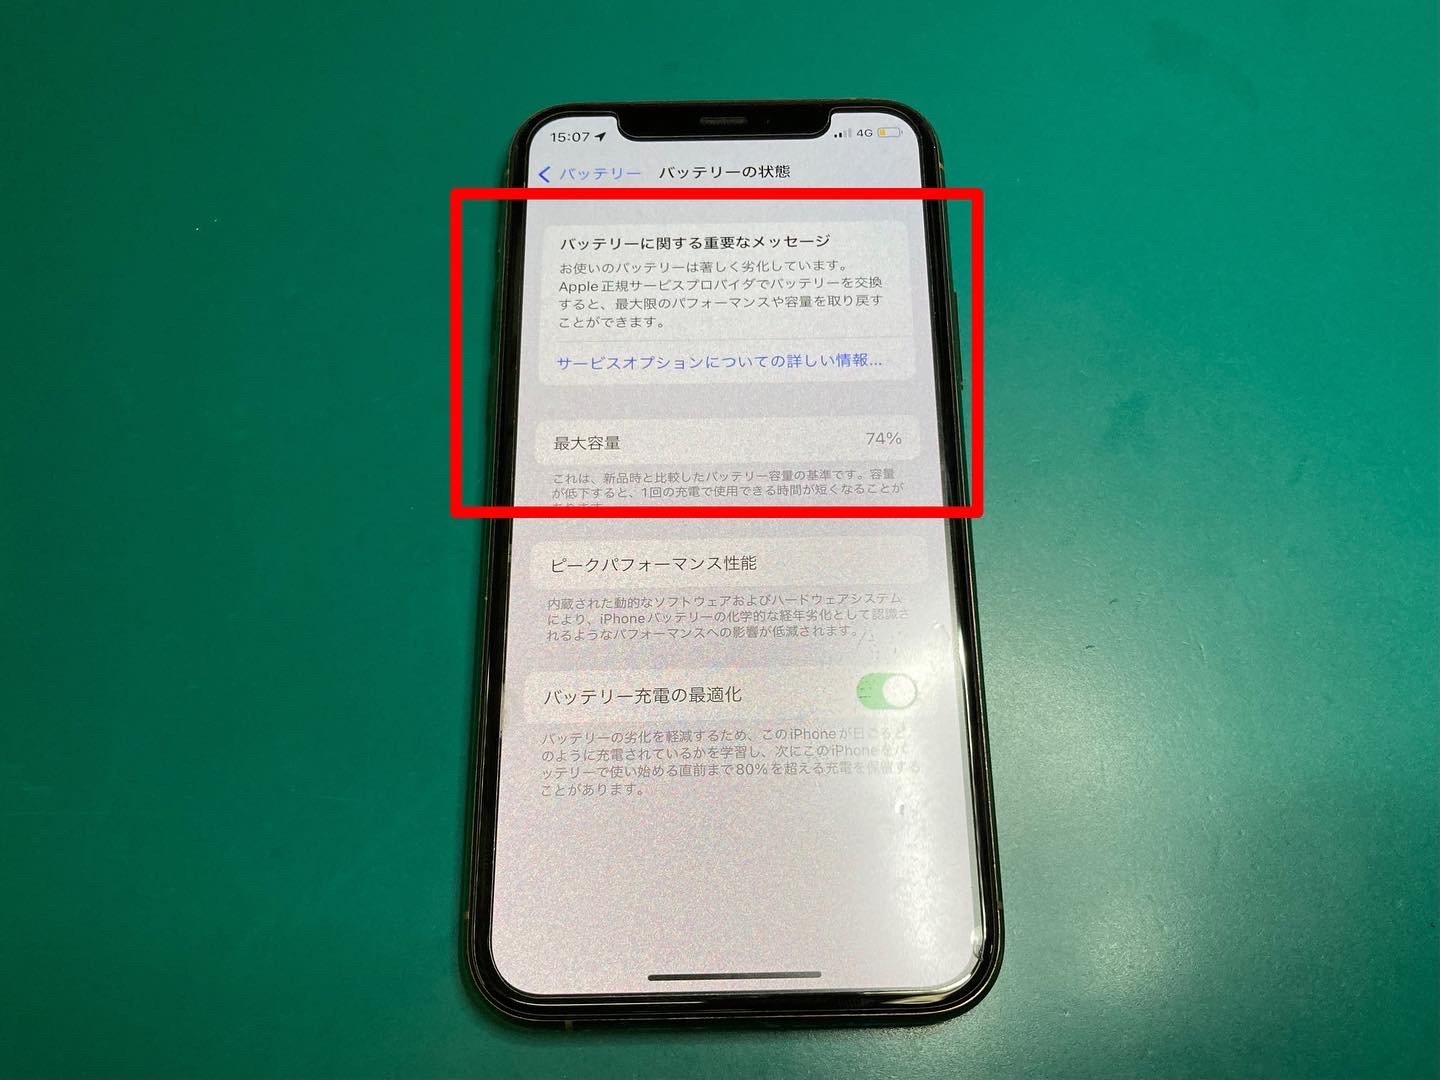 バッテリーのパフォーマンス低下のお知らせが表示されているiPhone修理お気軽にご相談ください。